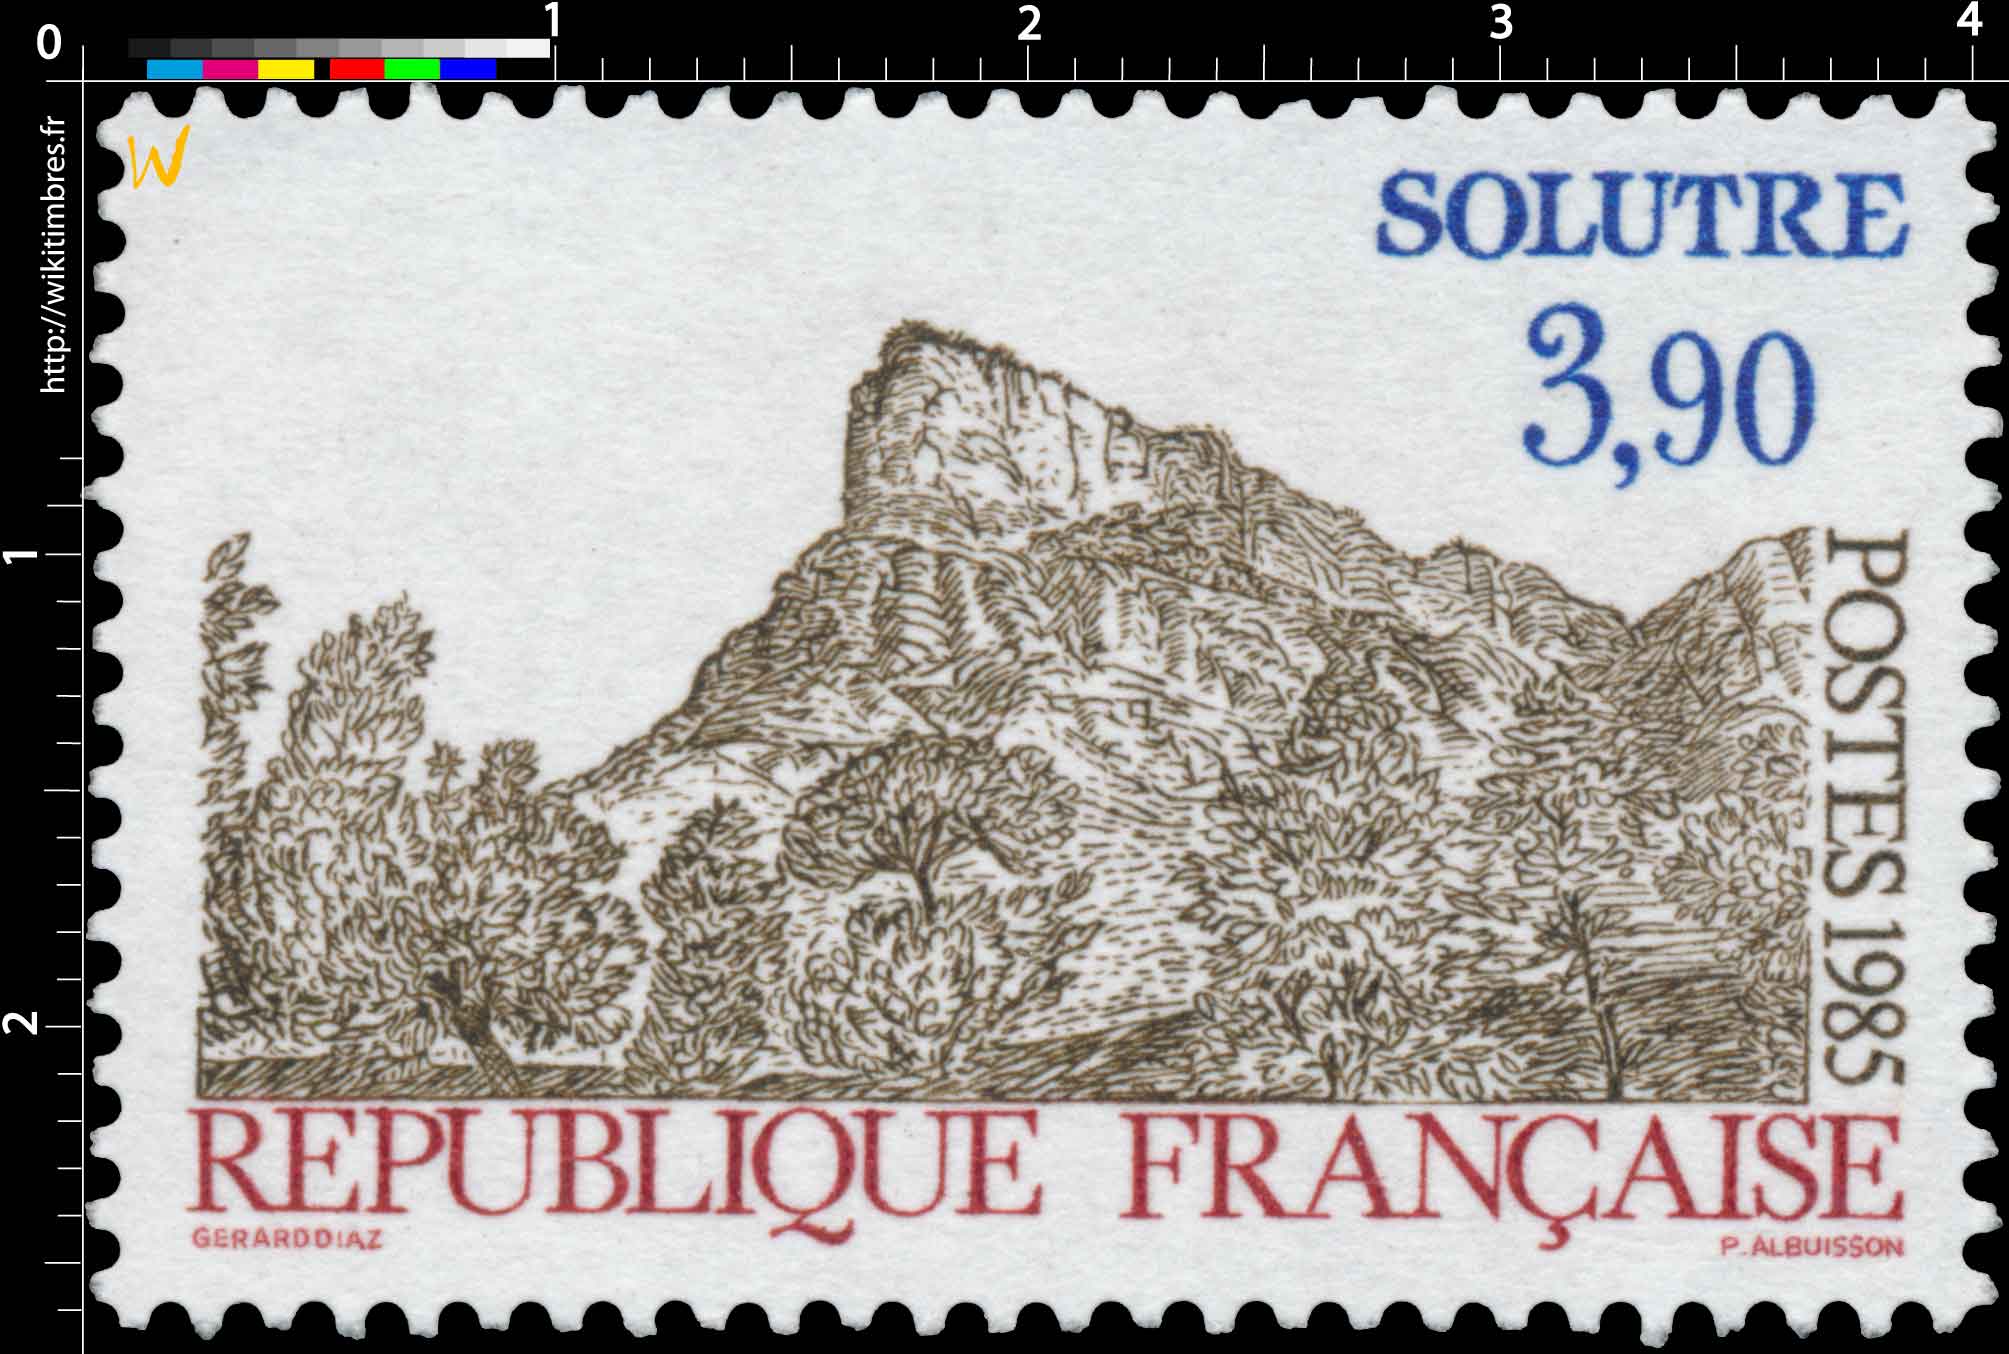 1985 SOLUTRÉ